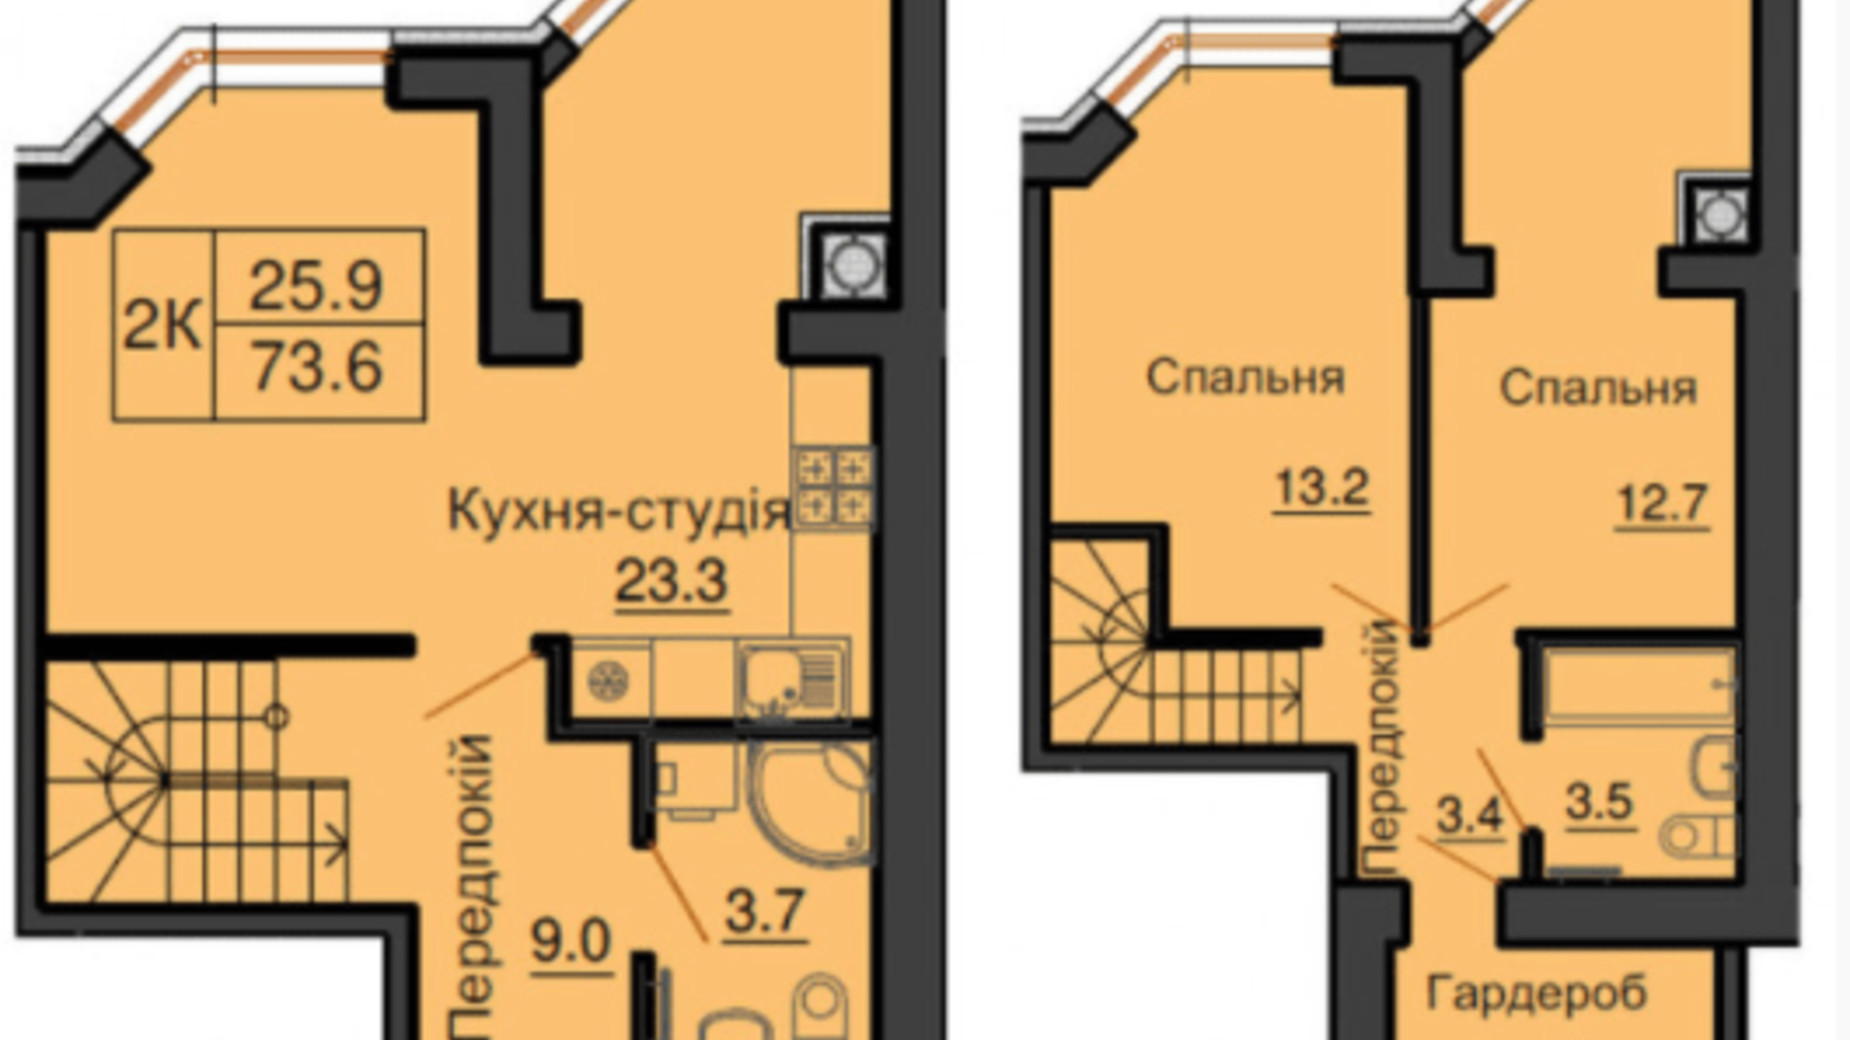 Планировка много­уровневой квартиры в ЖК София Клубный 73.6 м², фото 367622